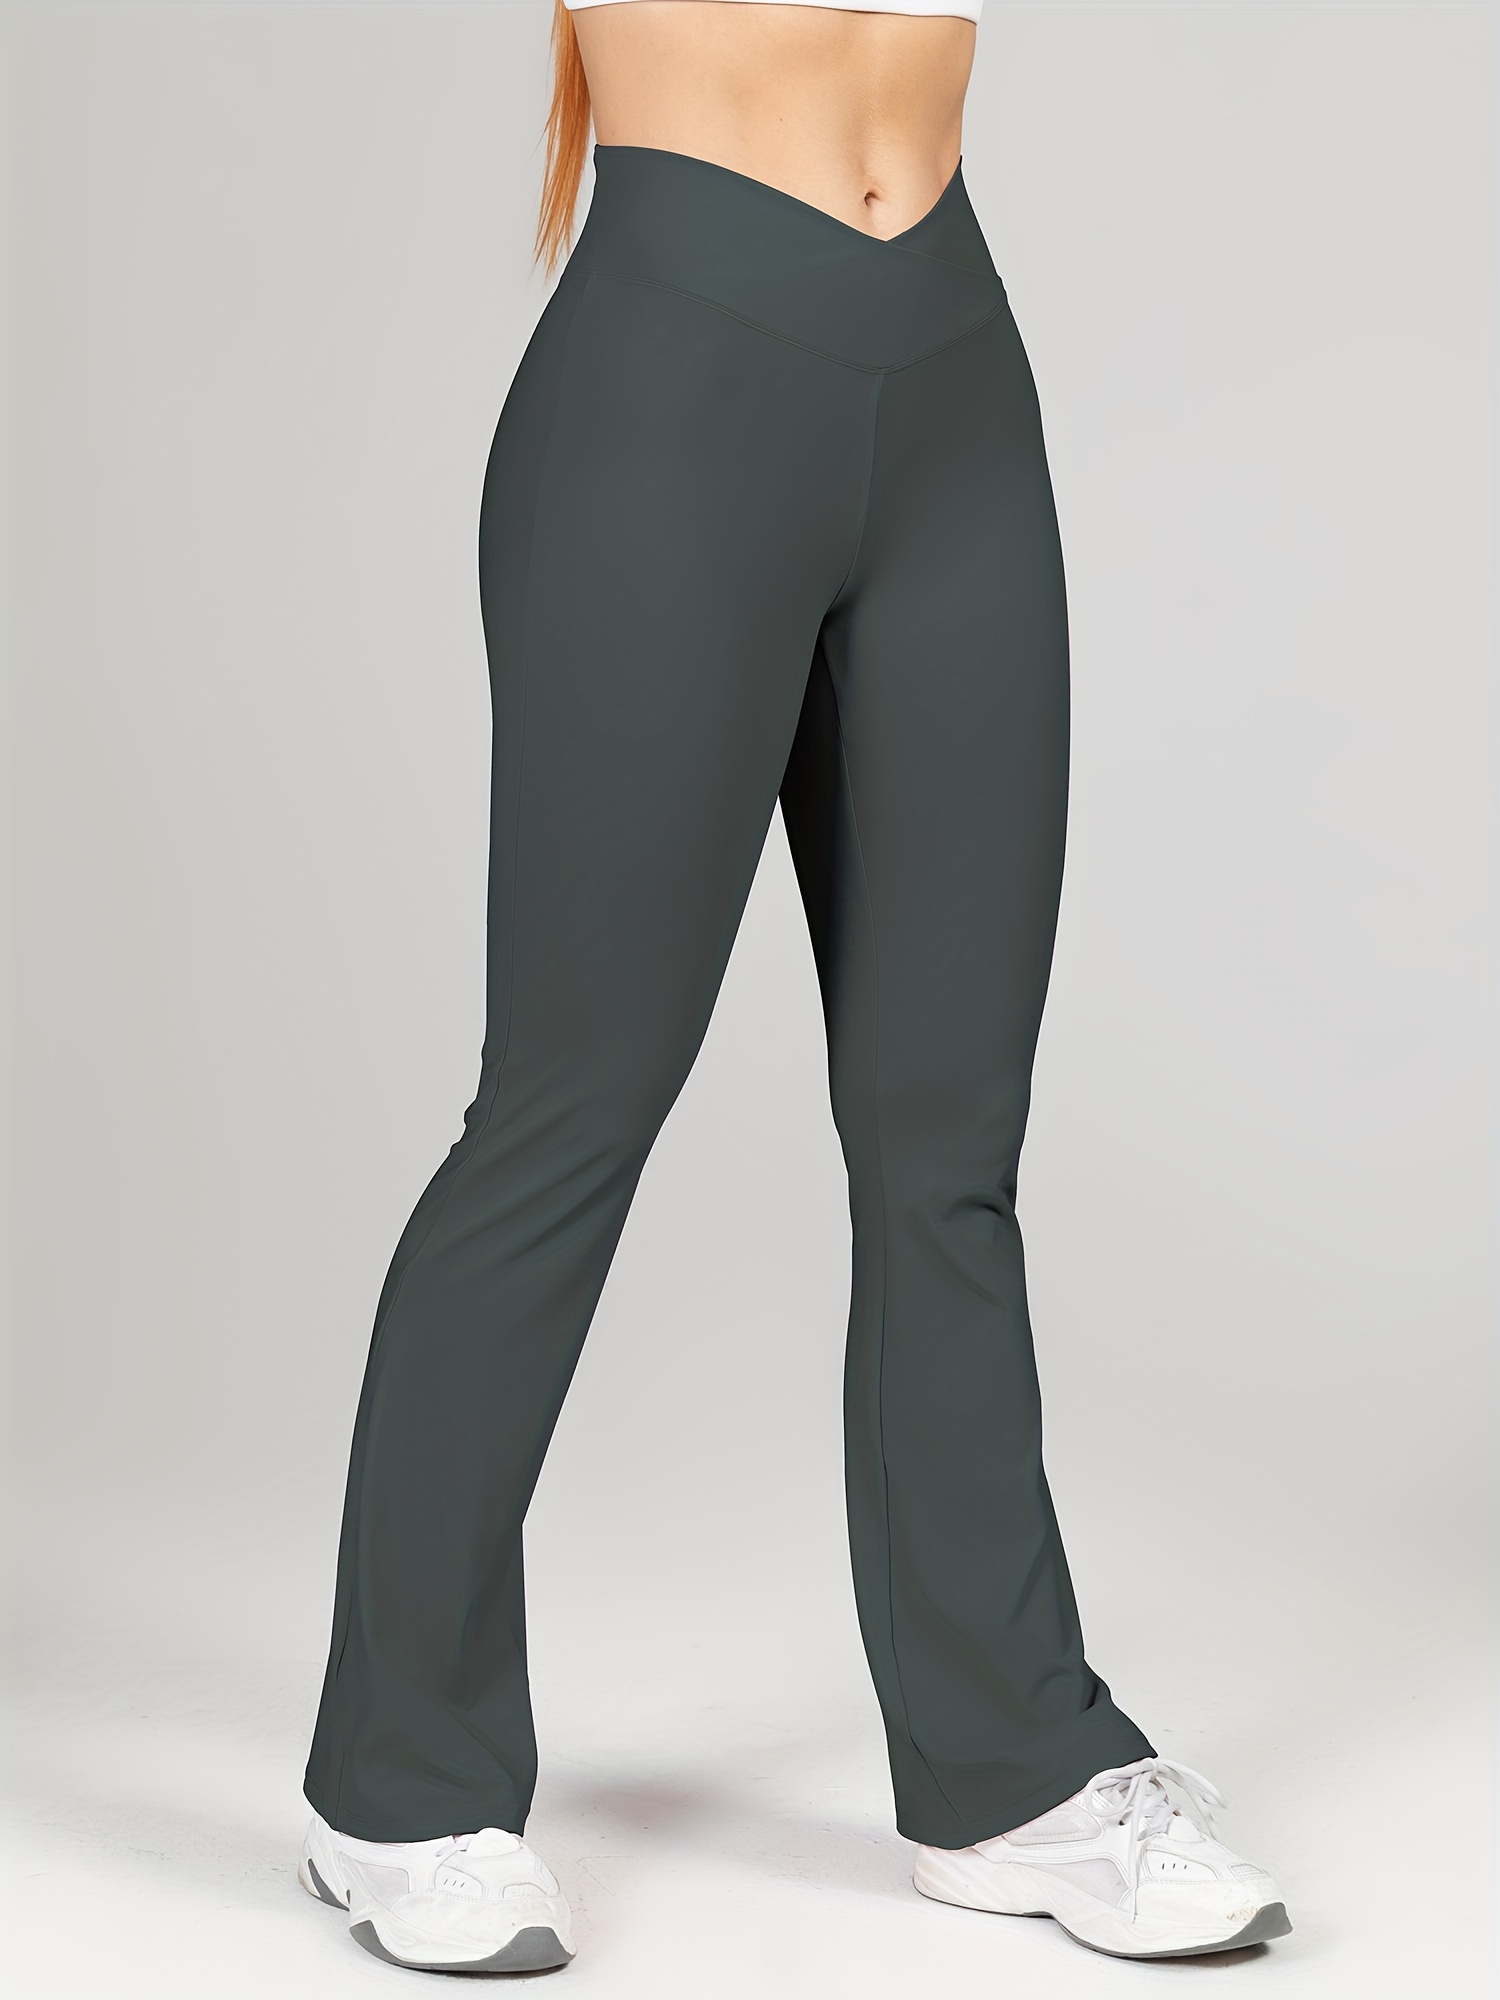 CSBYBD Flare Yoga Pants for Women Short Women High Waist Hip